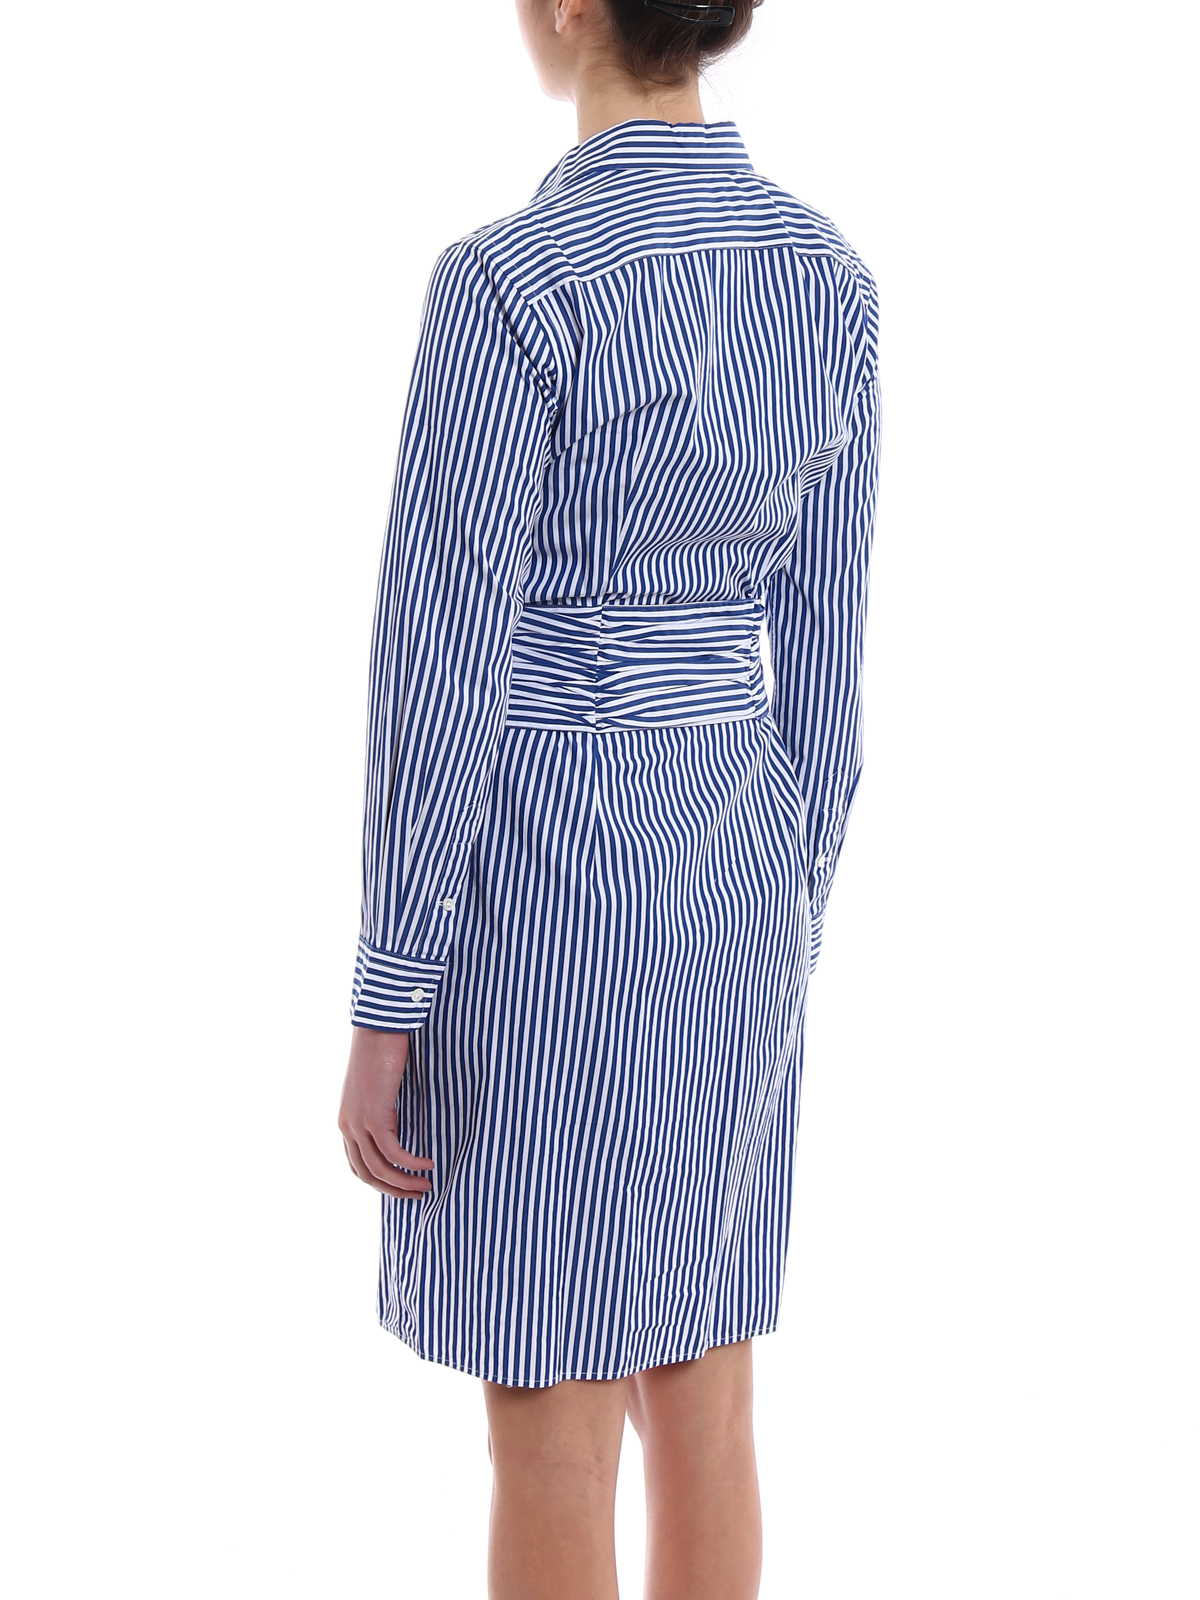 polo ralph lauren striped dress